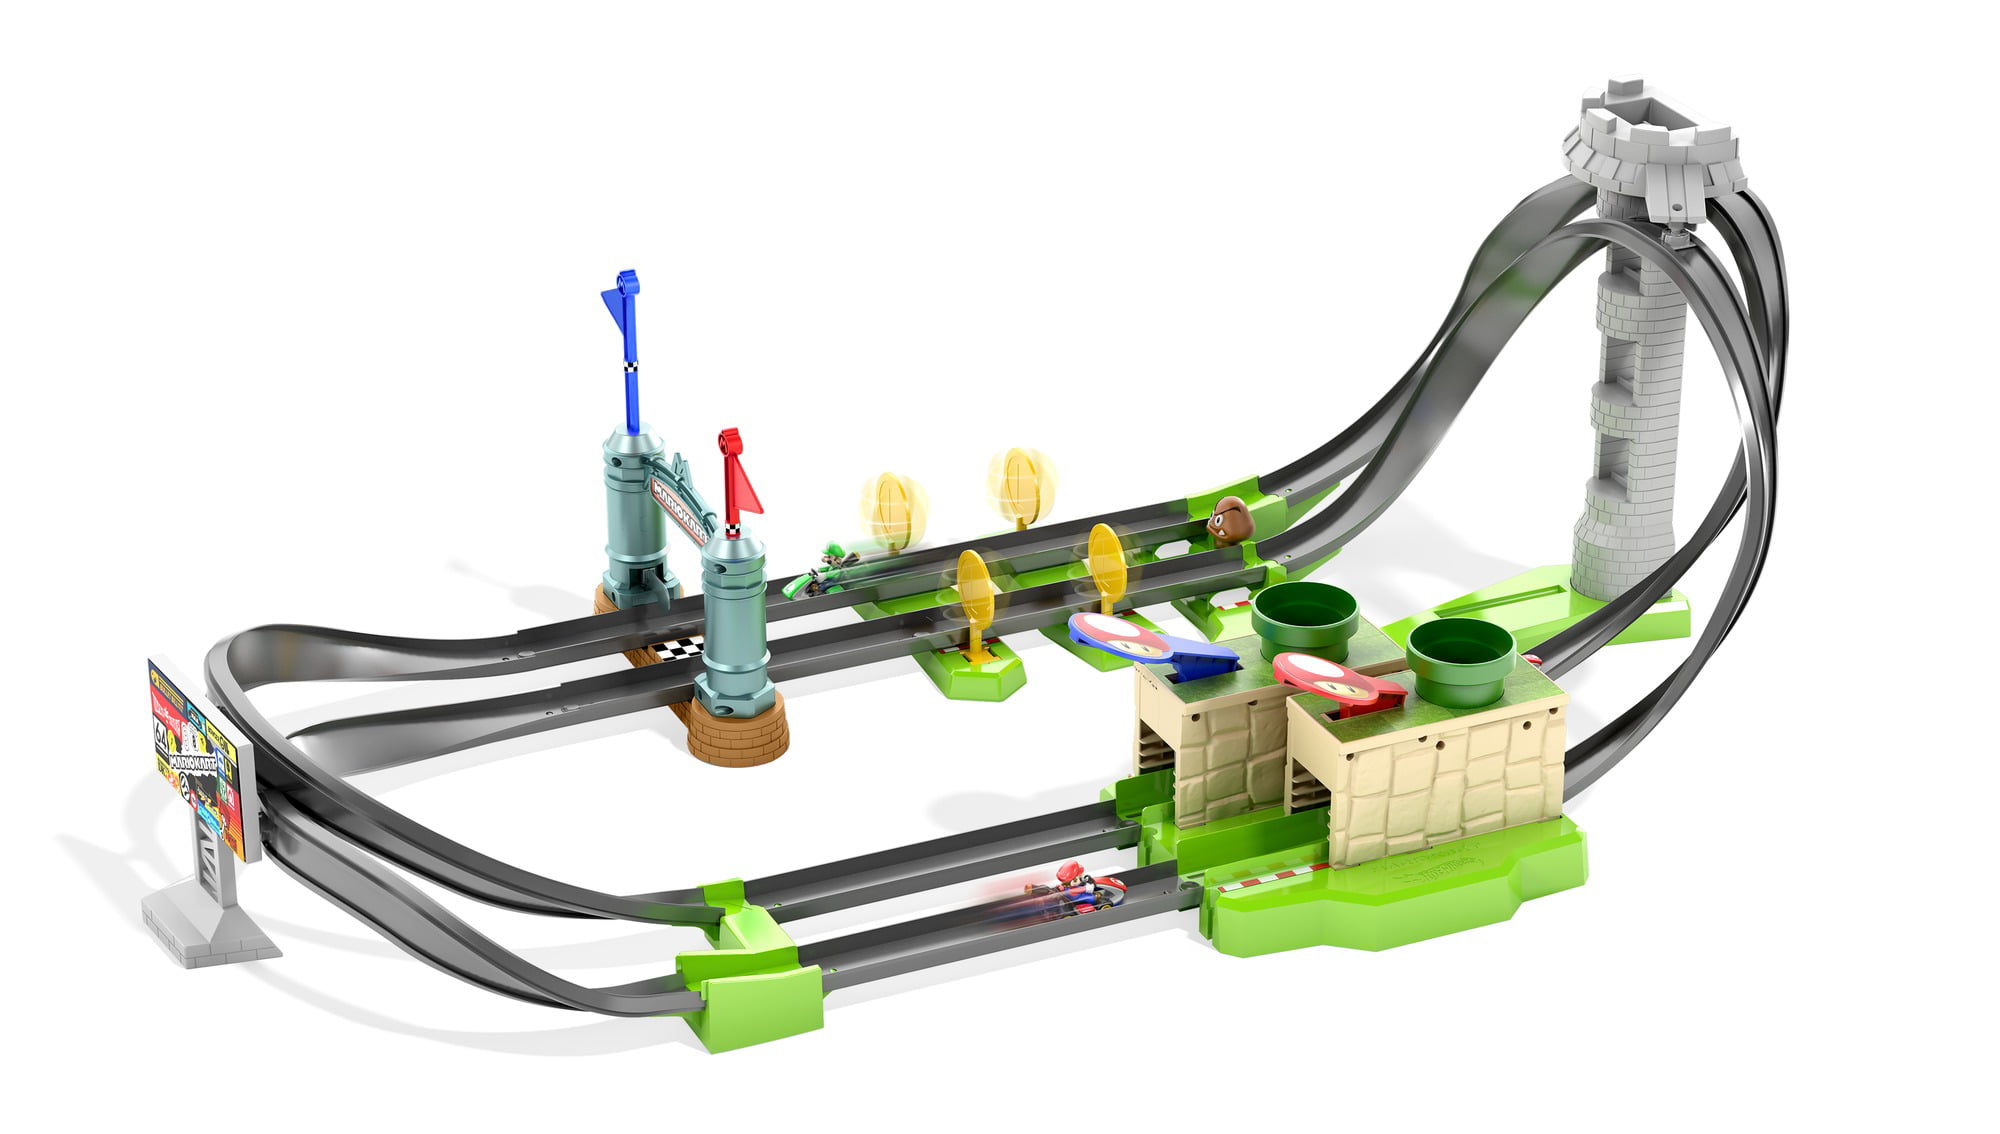 Hot Wheels Mario Kart Circuit Lite Track Set With 1:64 Scale Die-Cast Kart Vehicle